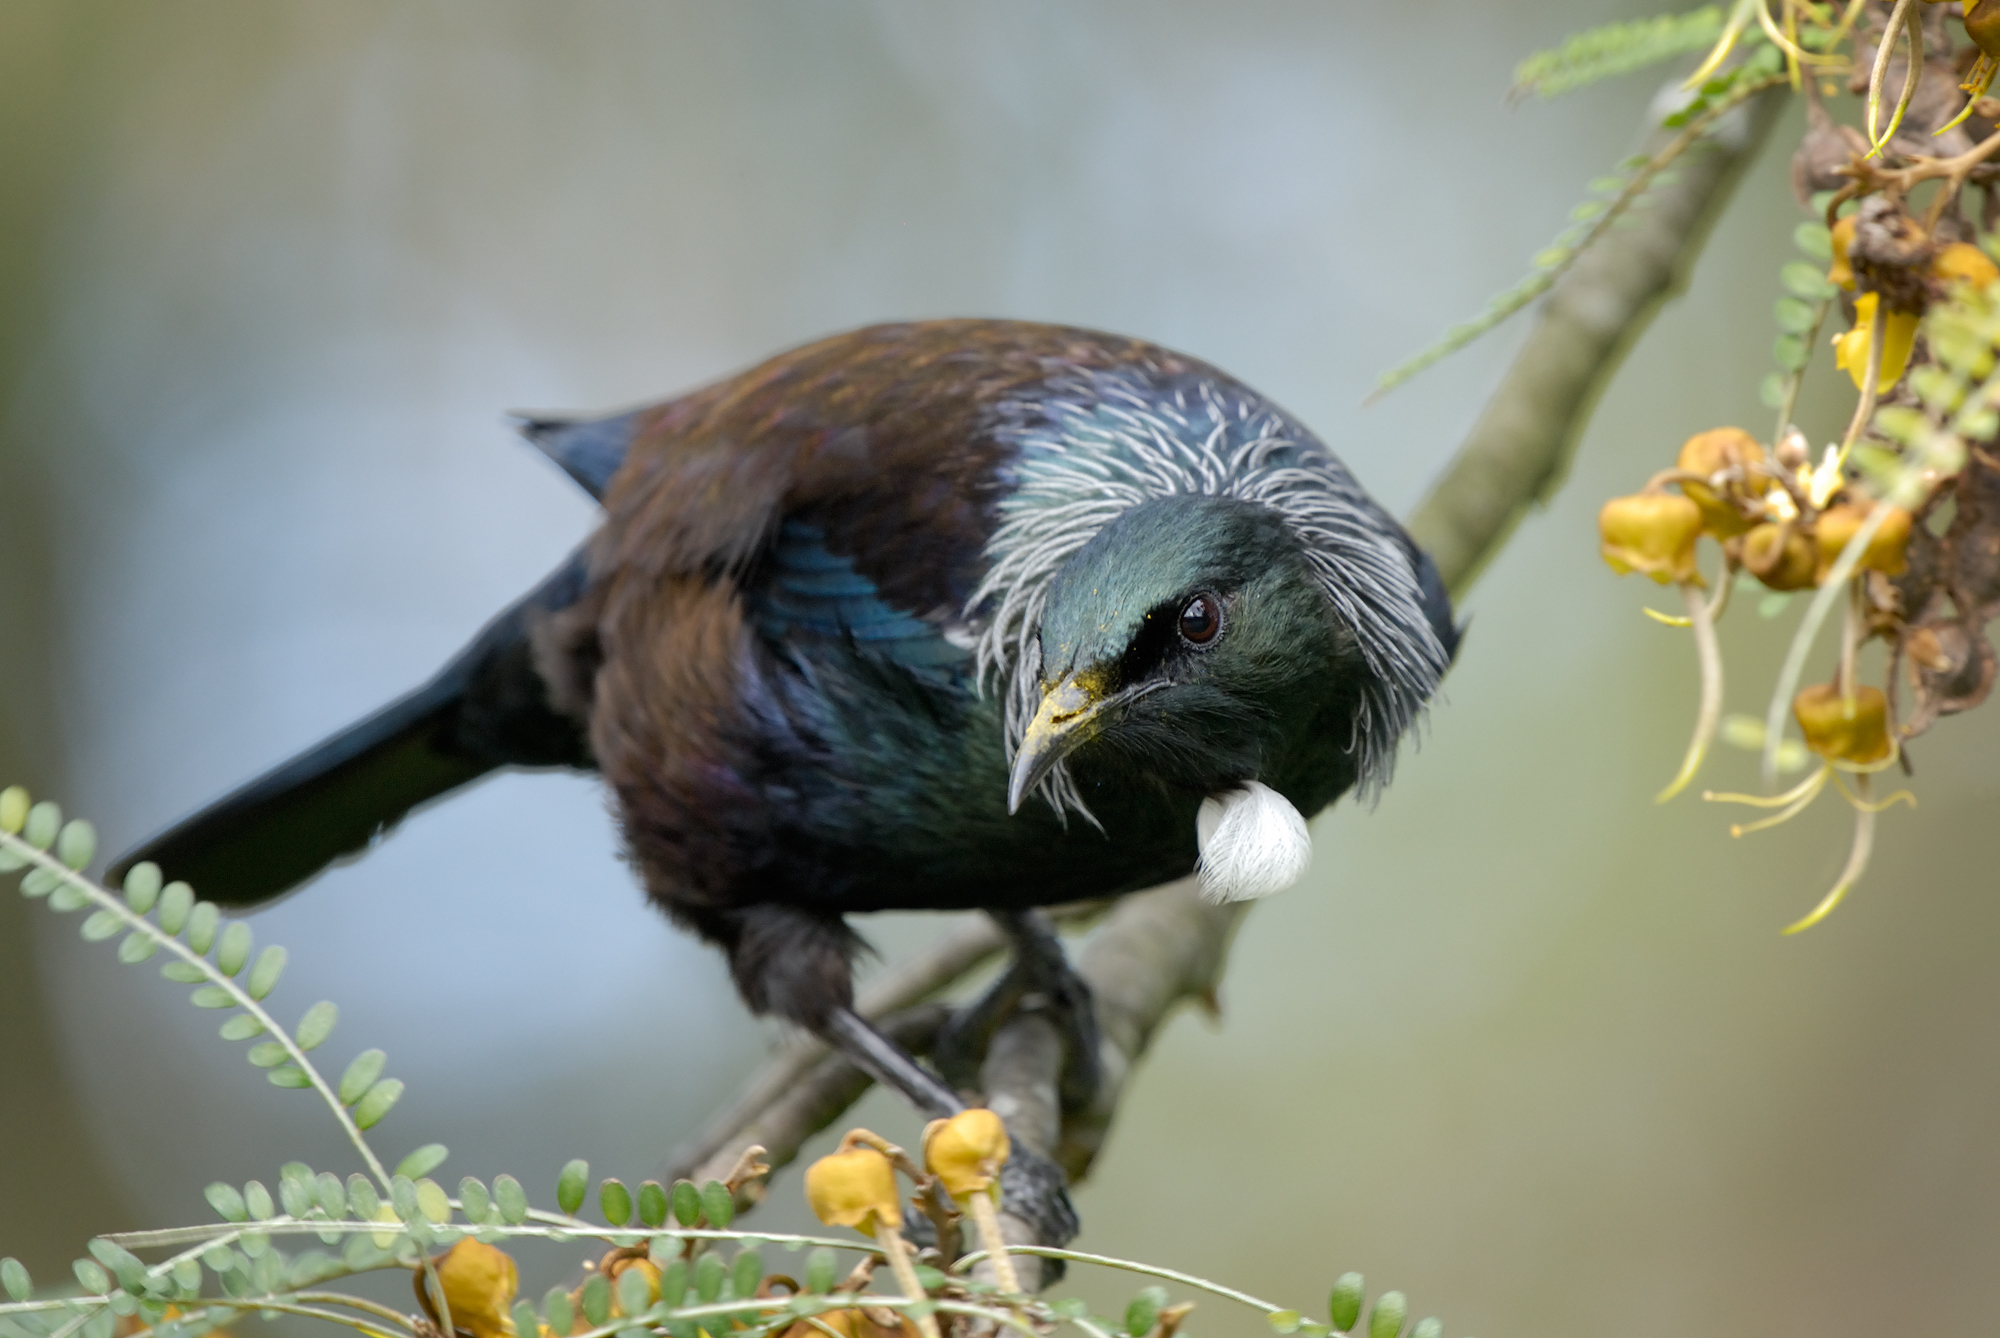 Tūī | Tui | New Zealand Birds Online